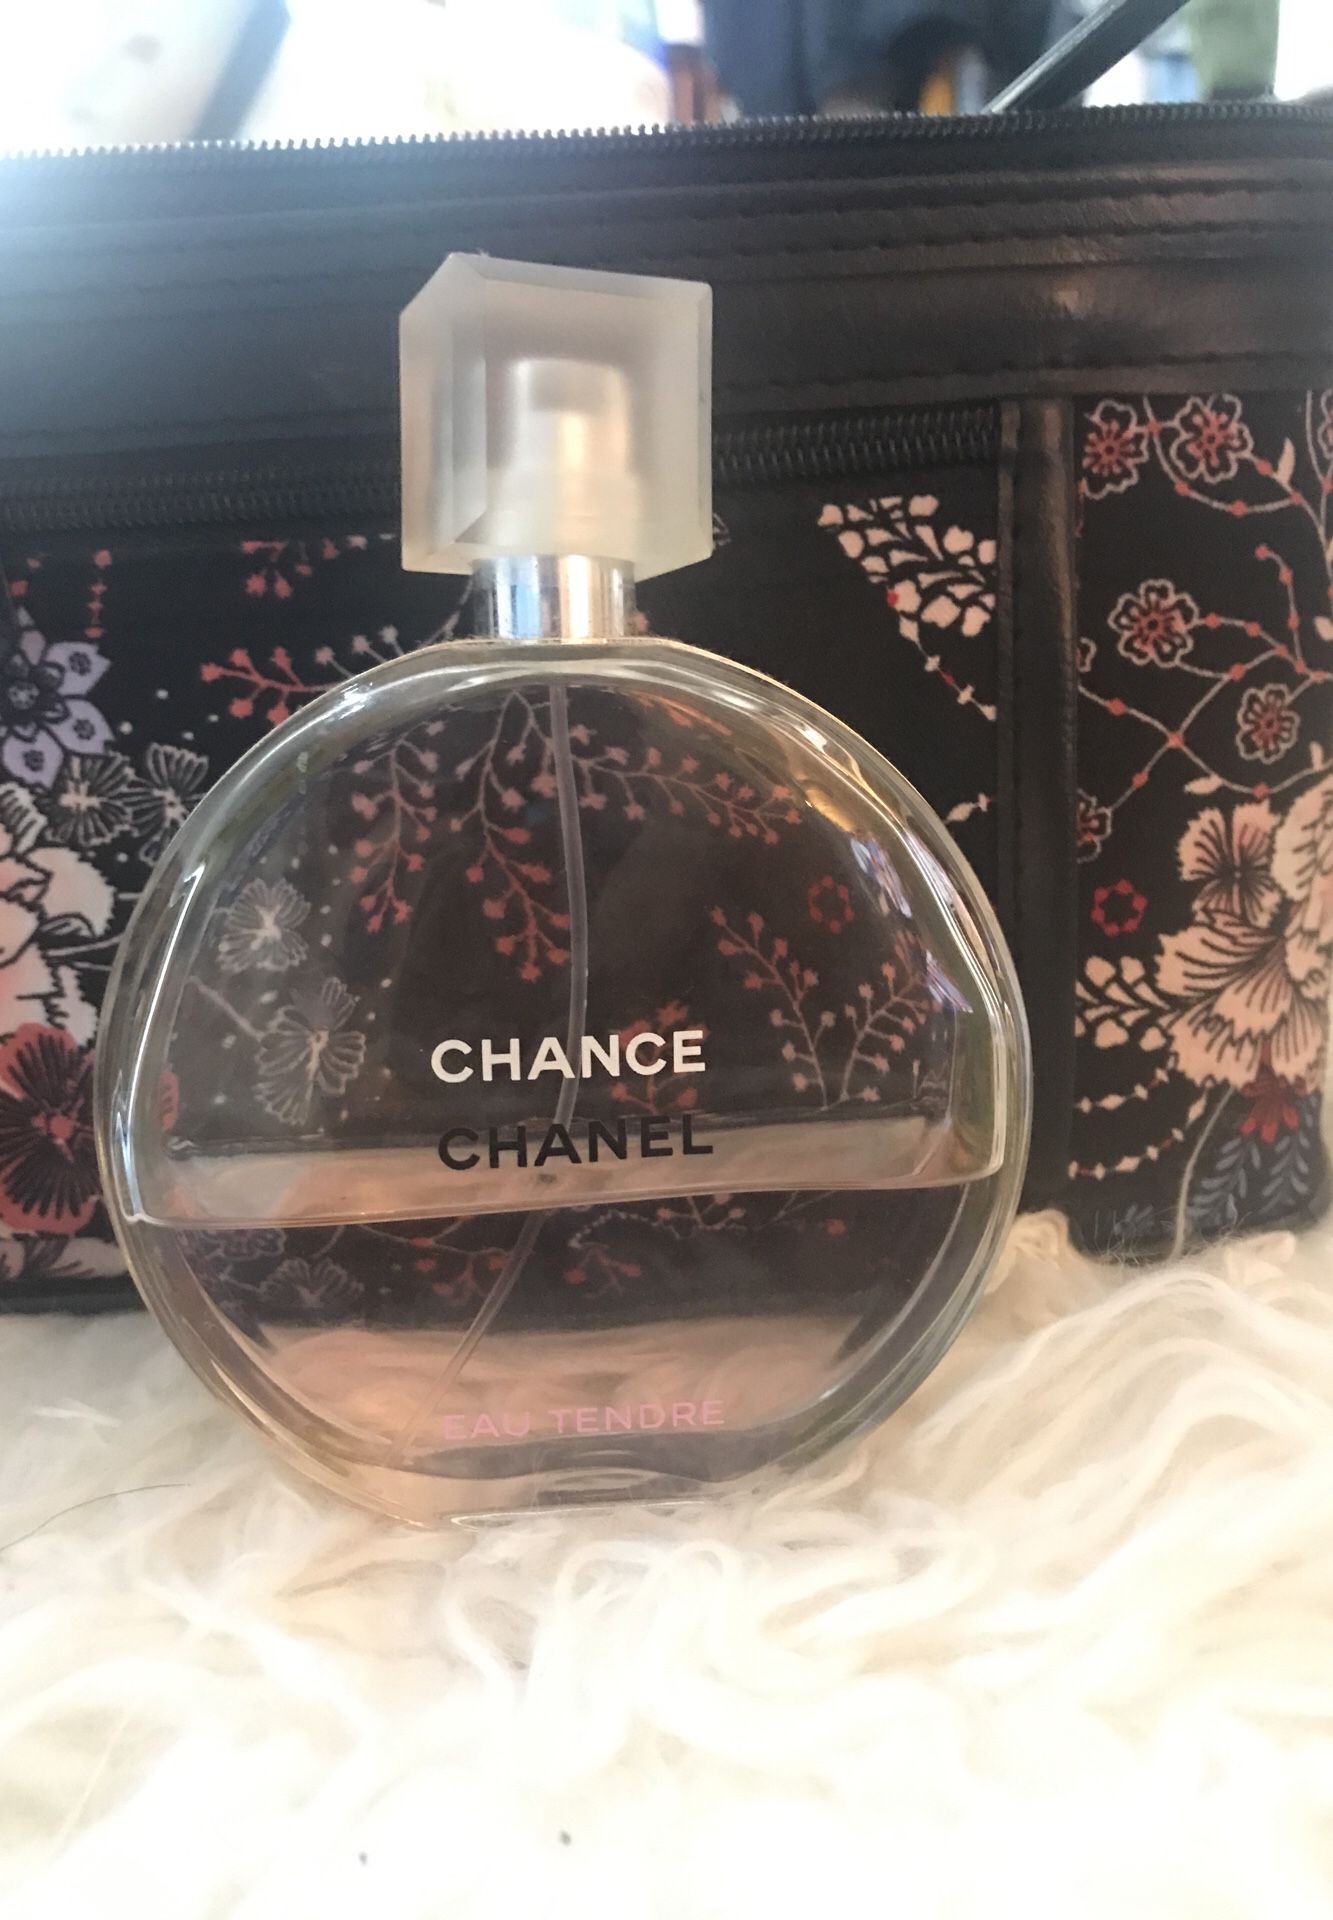 Chanel Chance Eau Tendre Eau de Parfum Spray - 1.7 oz